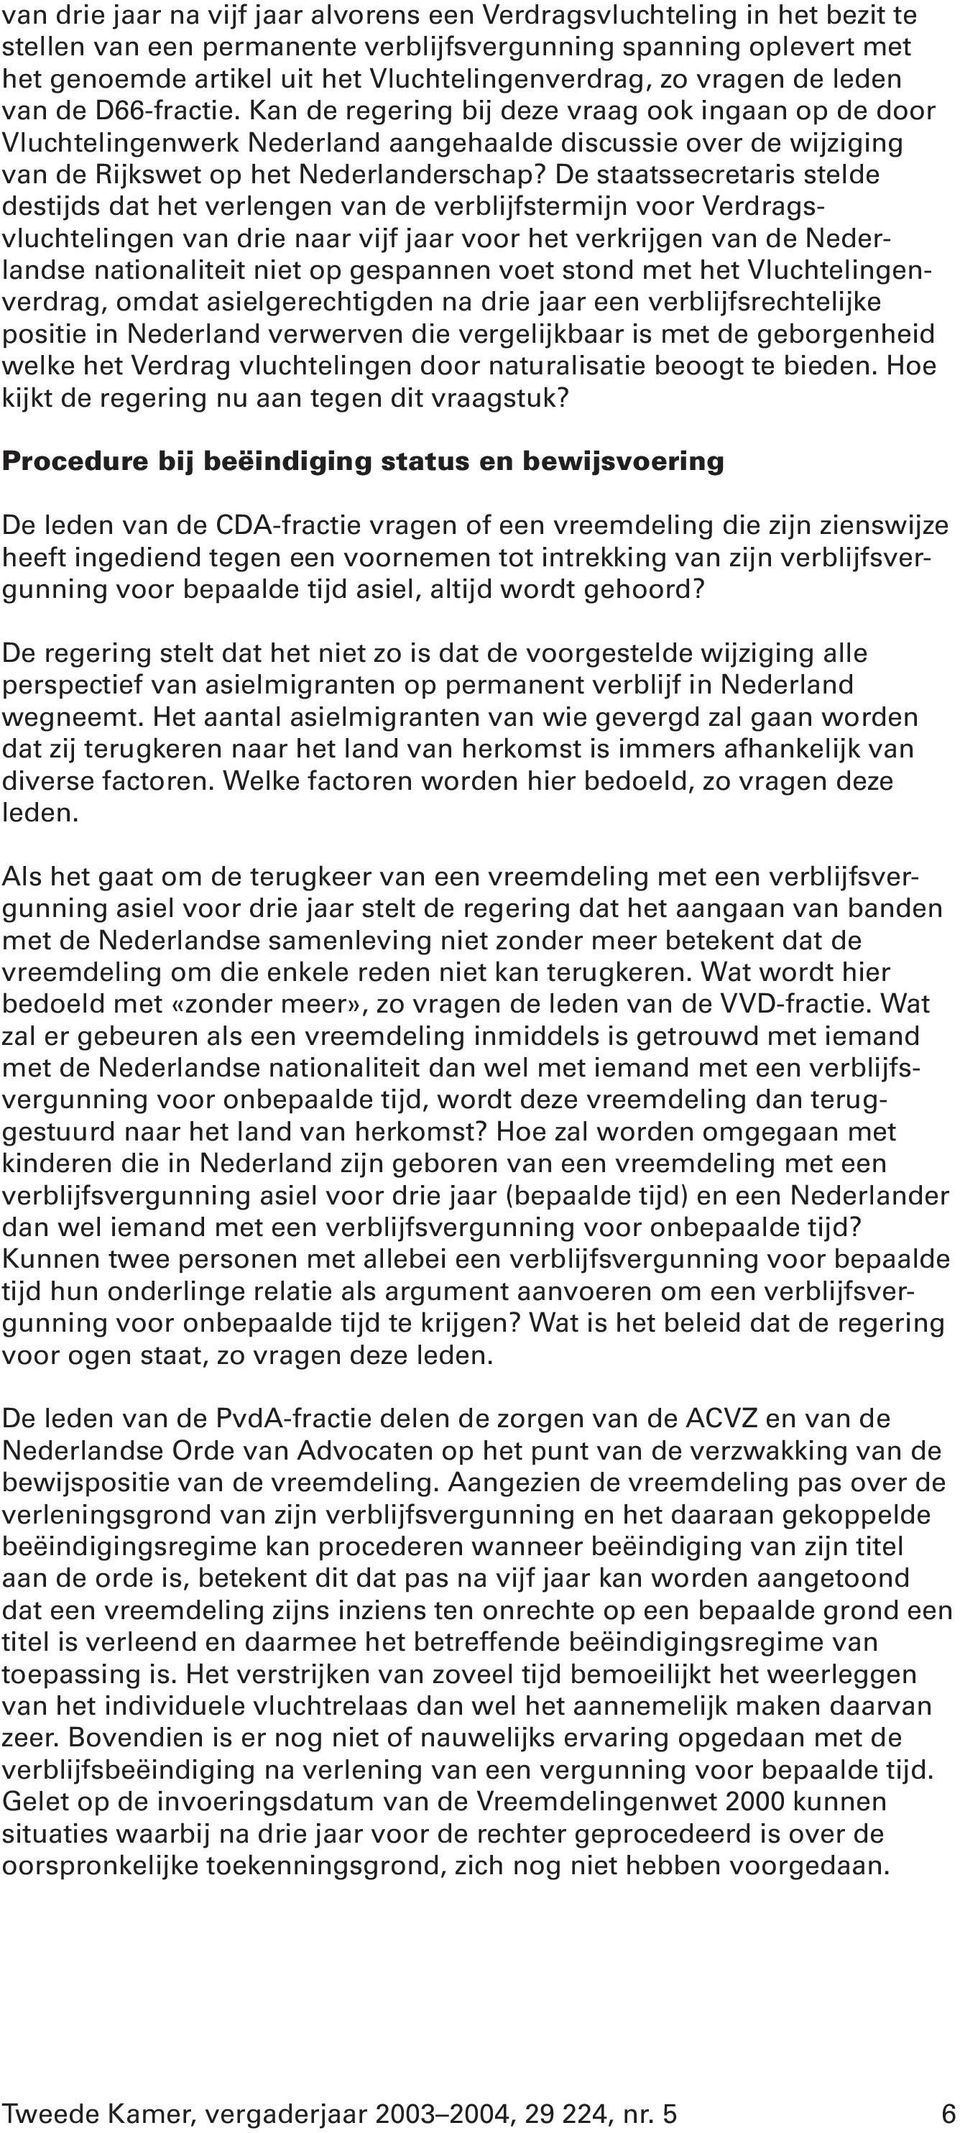 De staatssecretaris stelde destijds dat het verlengen van de verblijfstermijn voor Verdragsvluchtelingen van drie naar vijf jaar voor het verkrijgen van de Nederlandse nationaliteit niet op gespannen